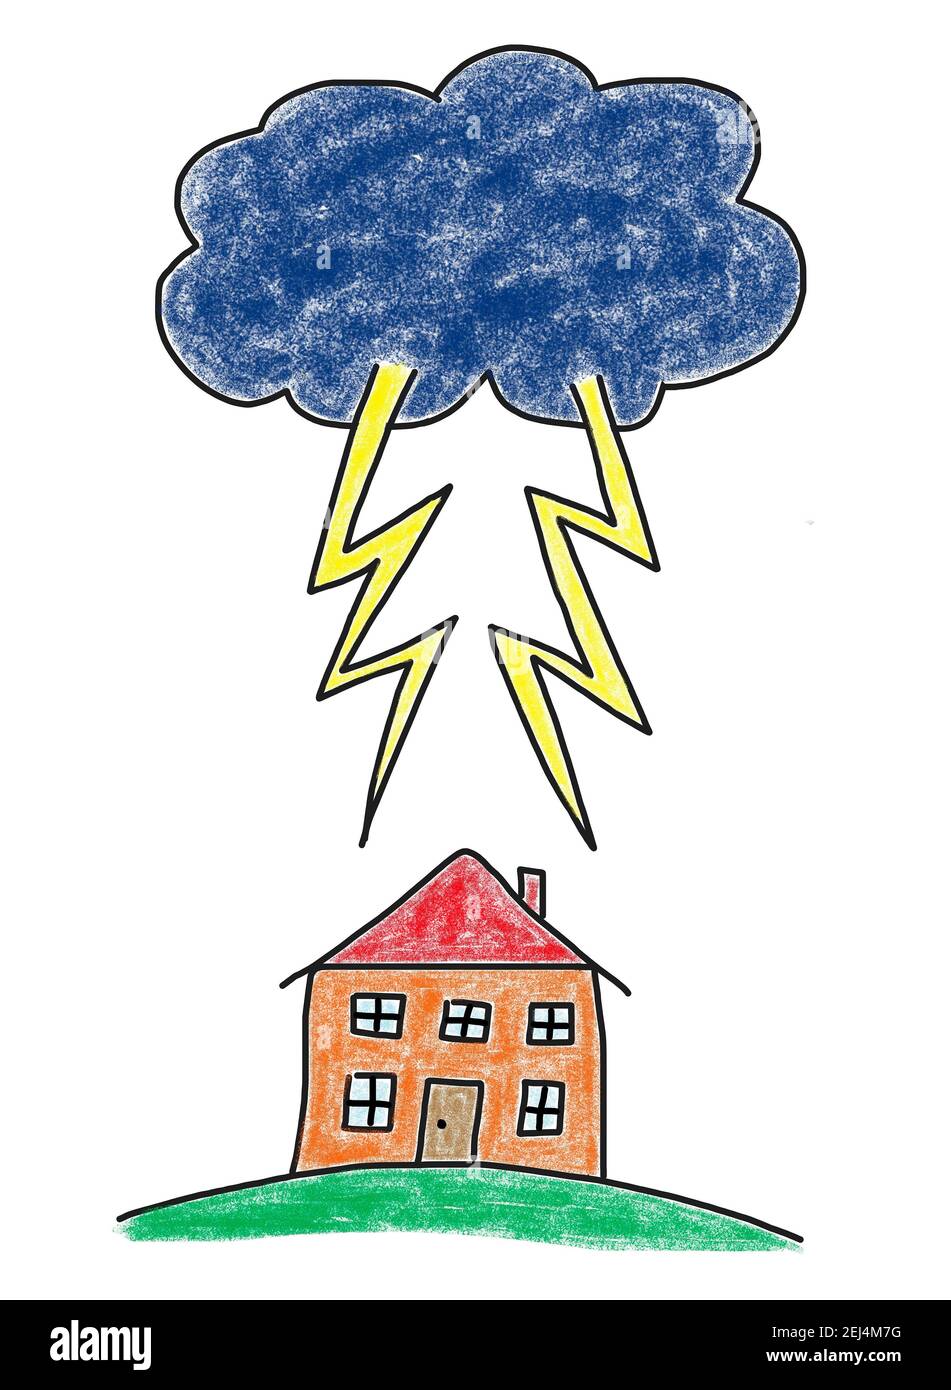 Illustration naïve, dessin pour enfants, orages sombres avec foudre au-dessus d'une maison Banque D'Images